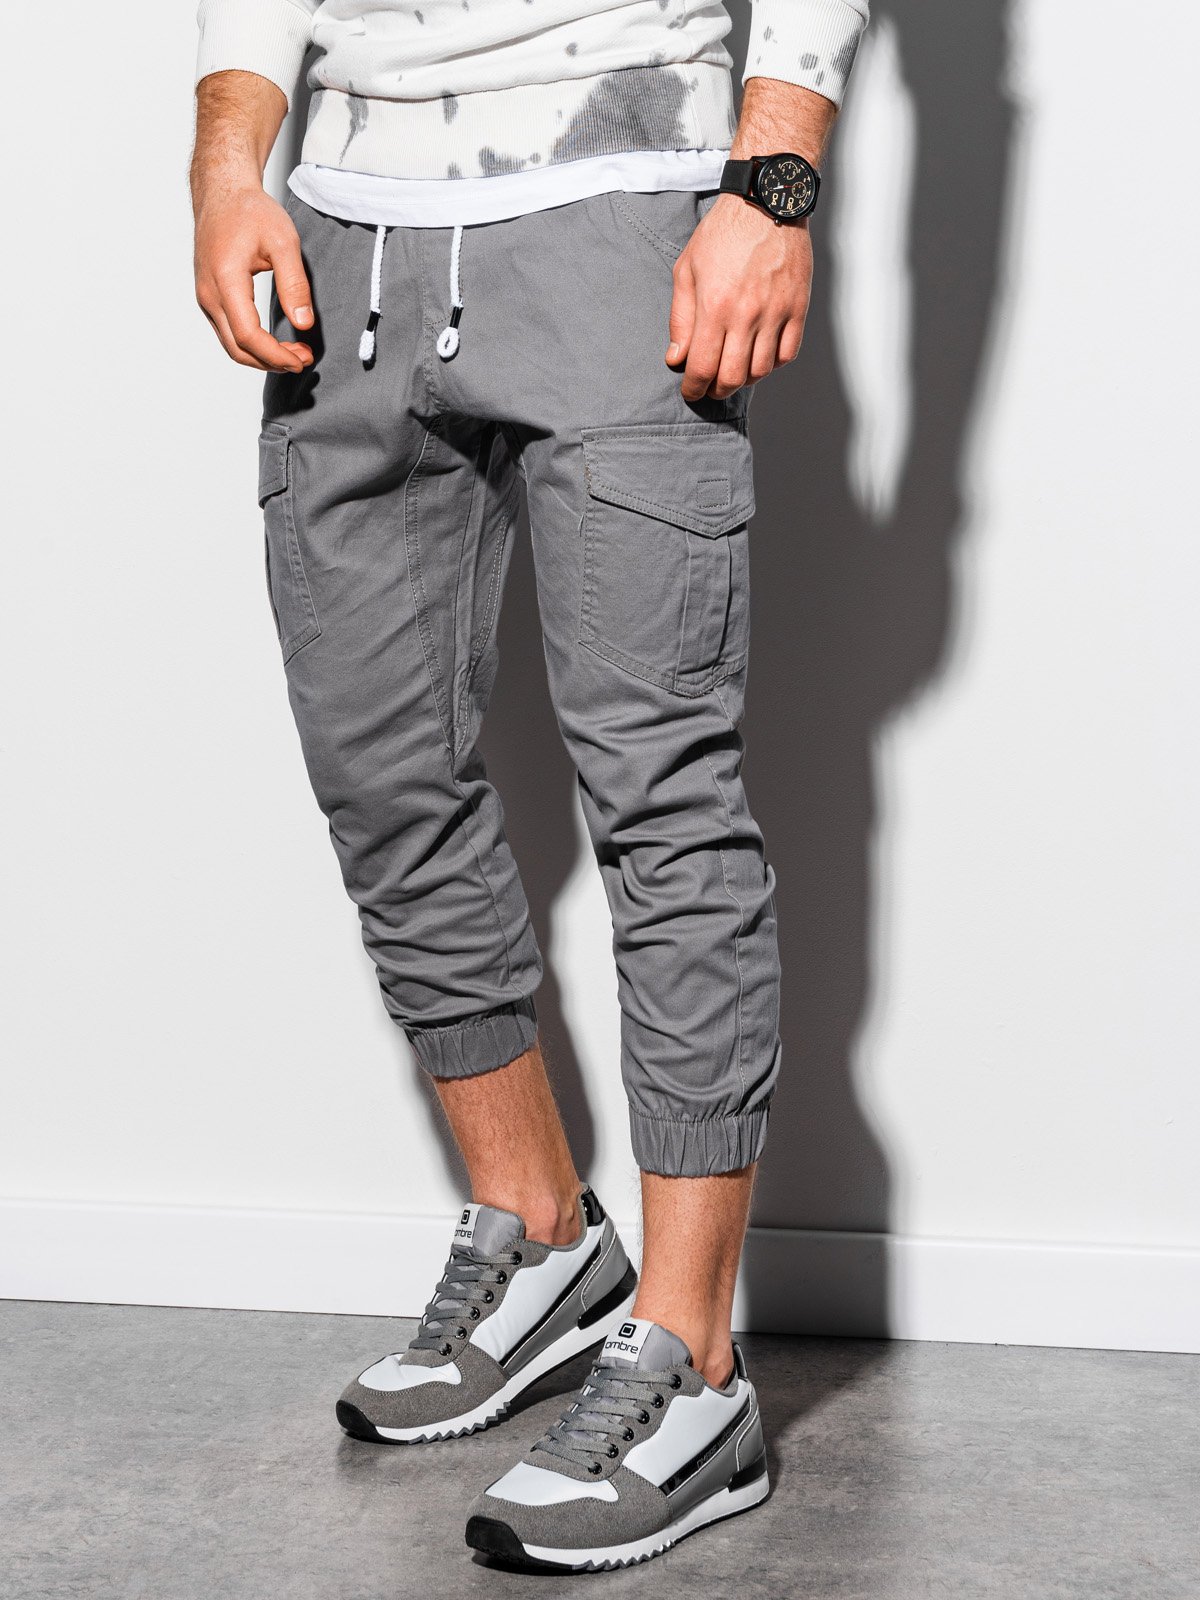 Men's pants joggers P761 - grey | MODONE wholesale - Clothing For Men